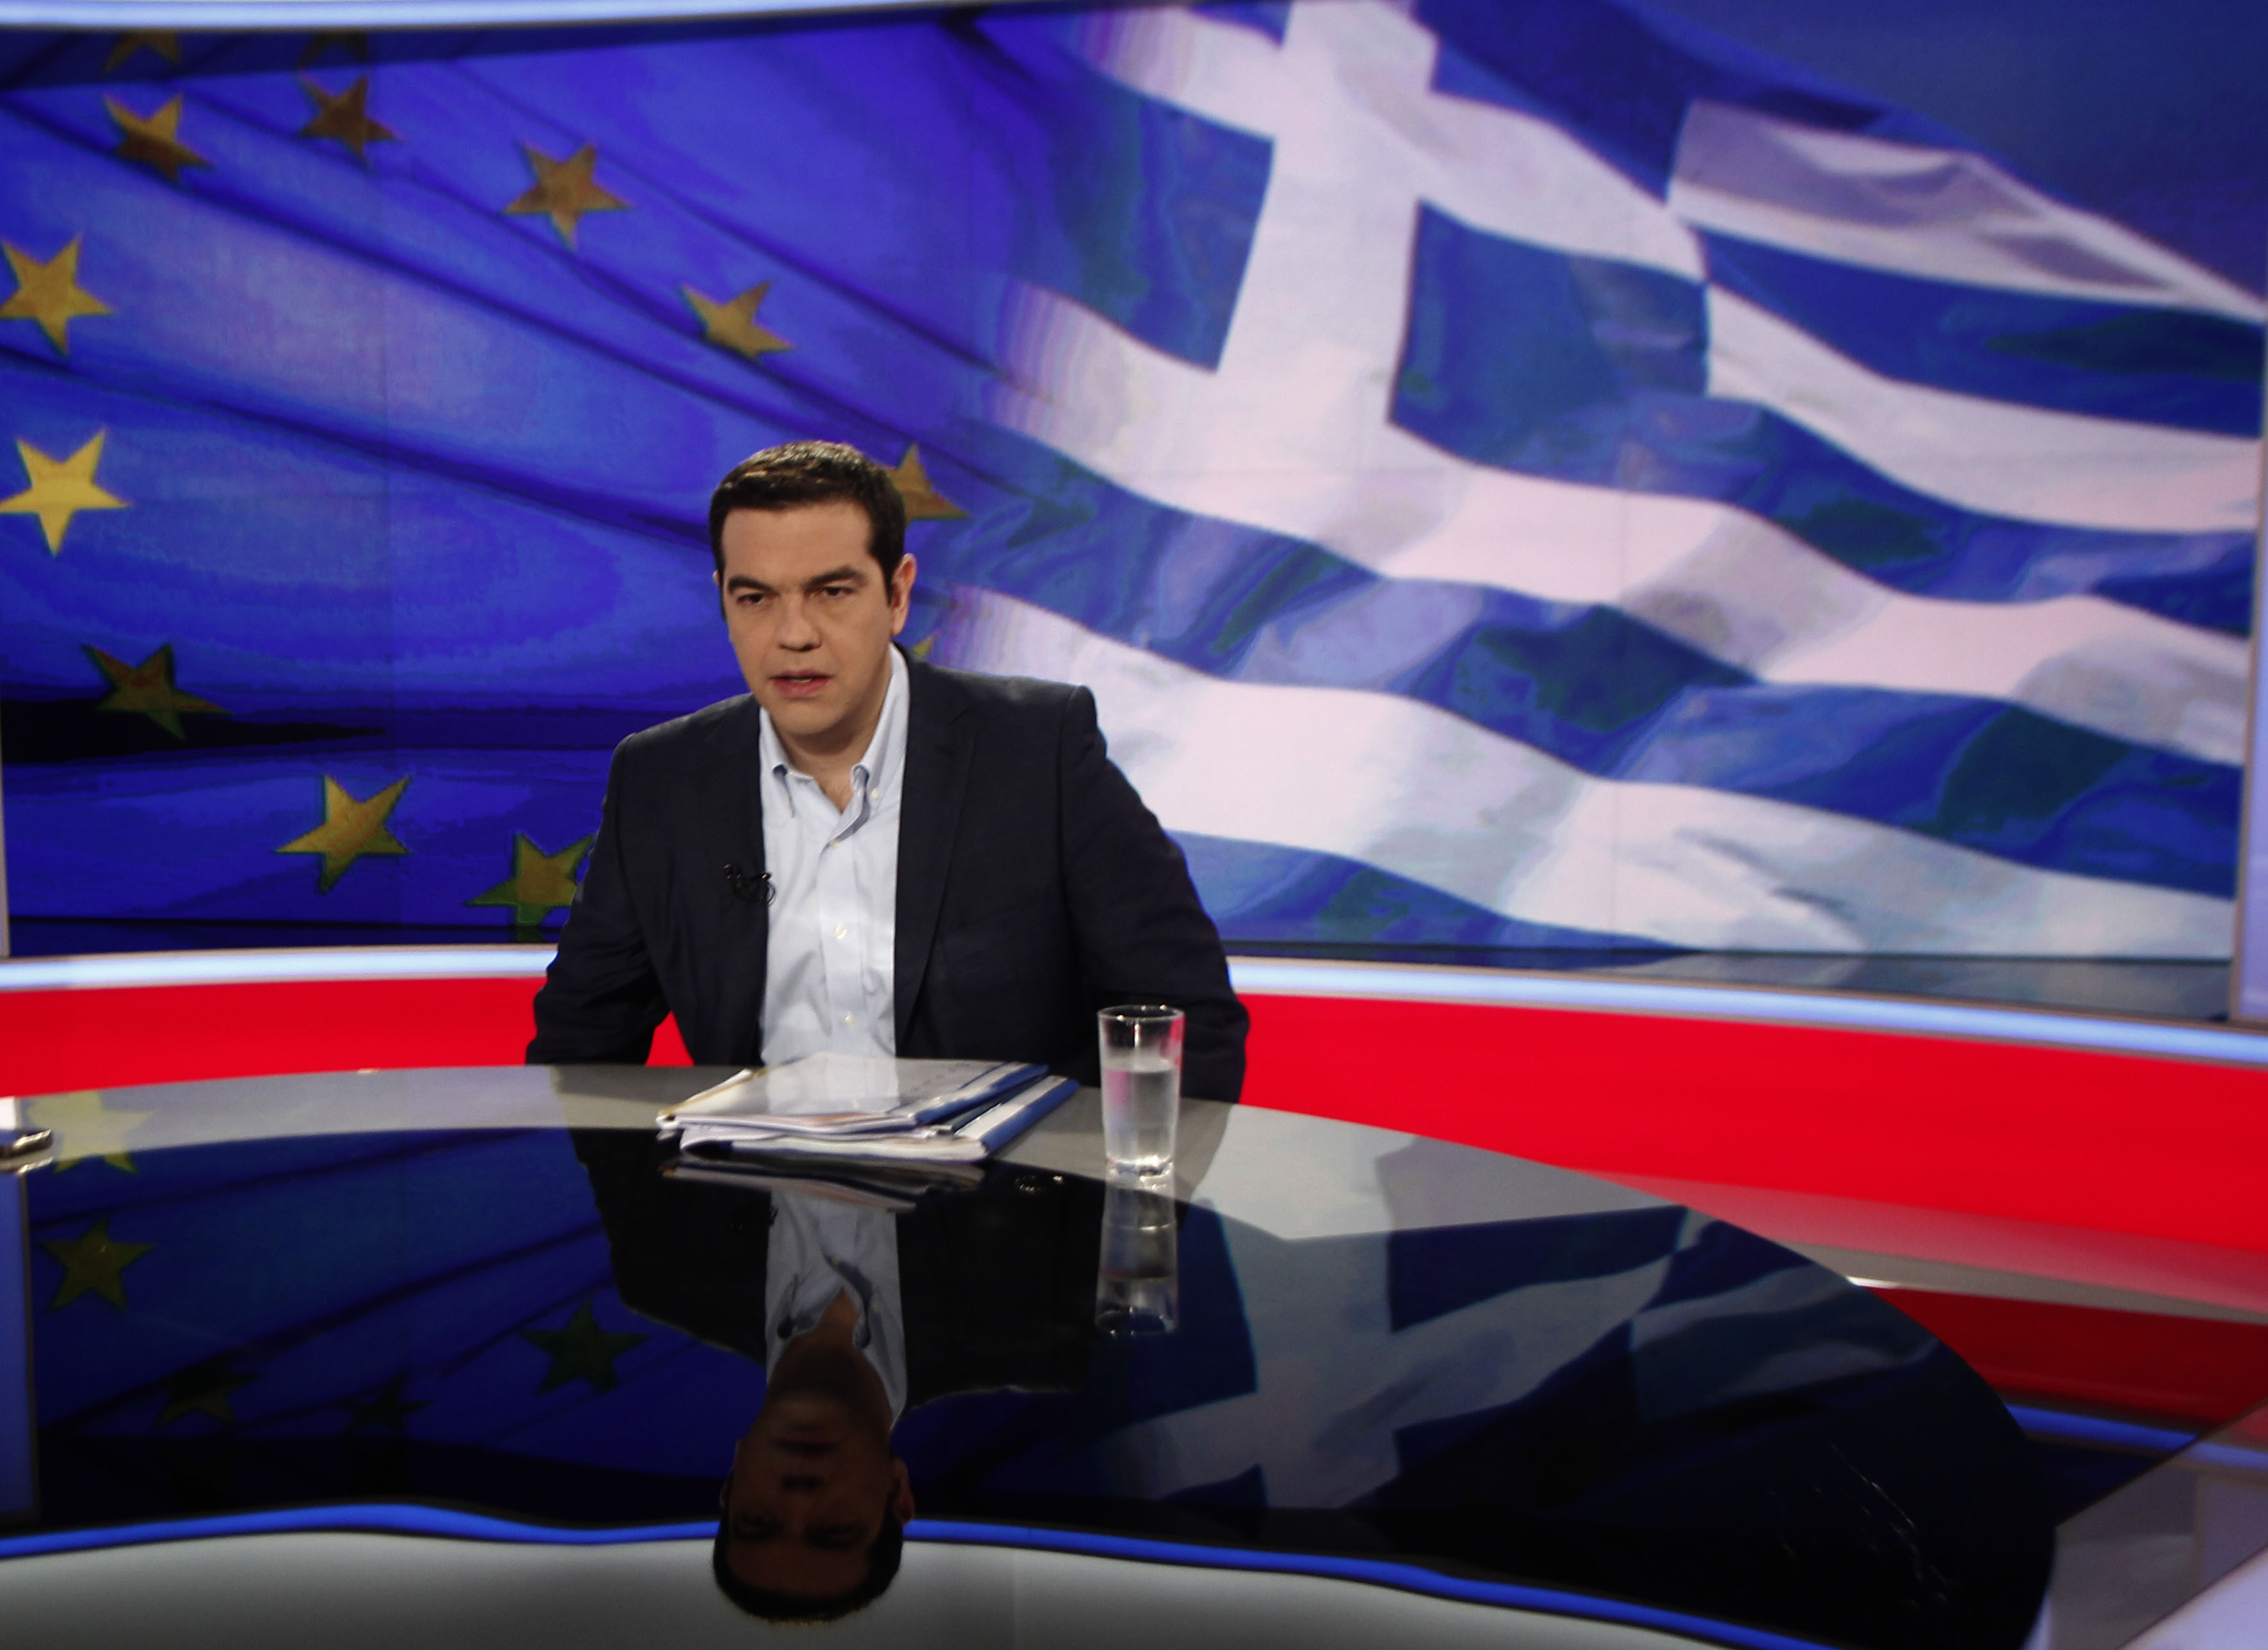 Interview of Prime Minister Tsipras on ERT postponed